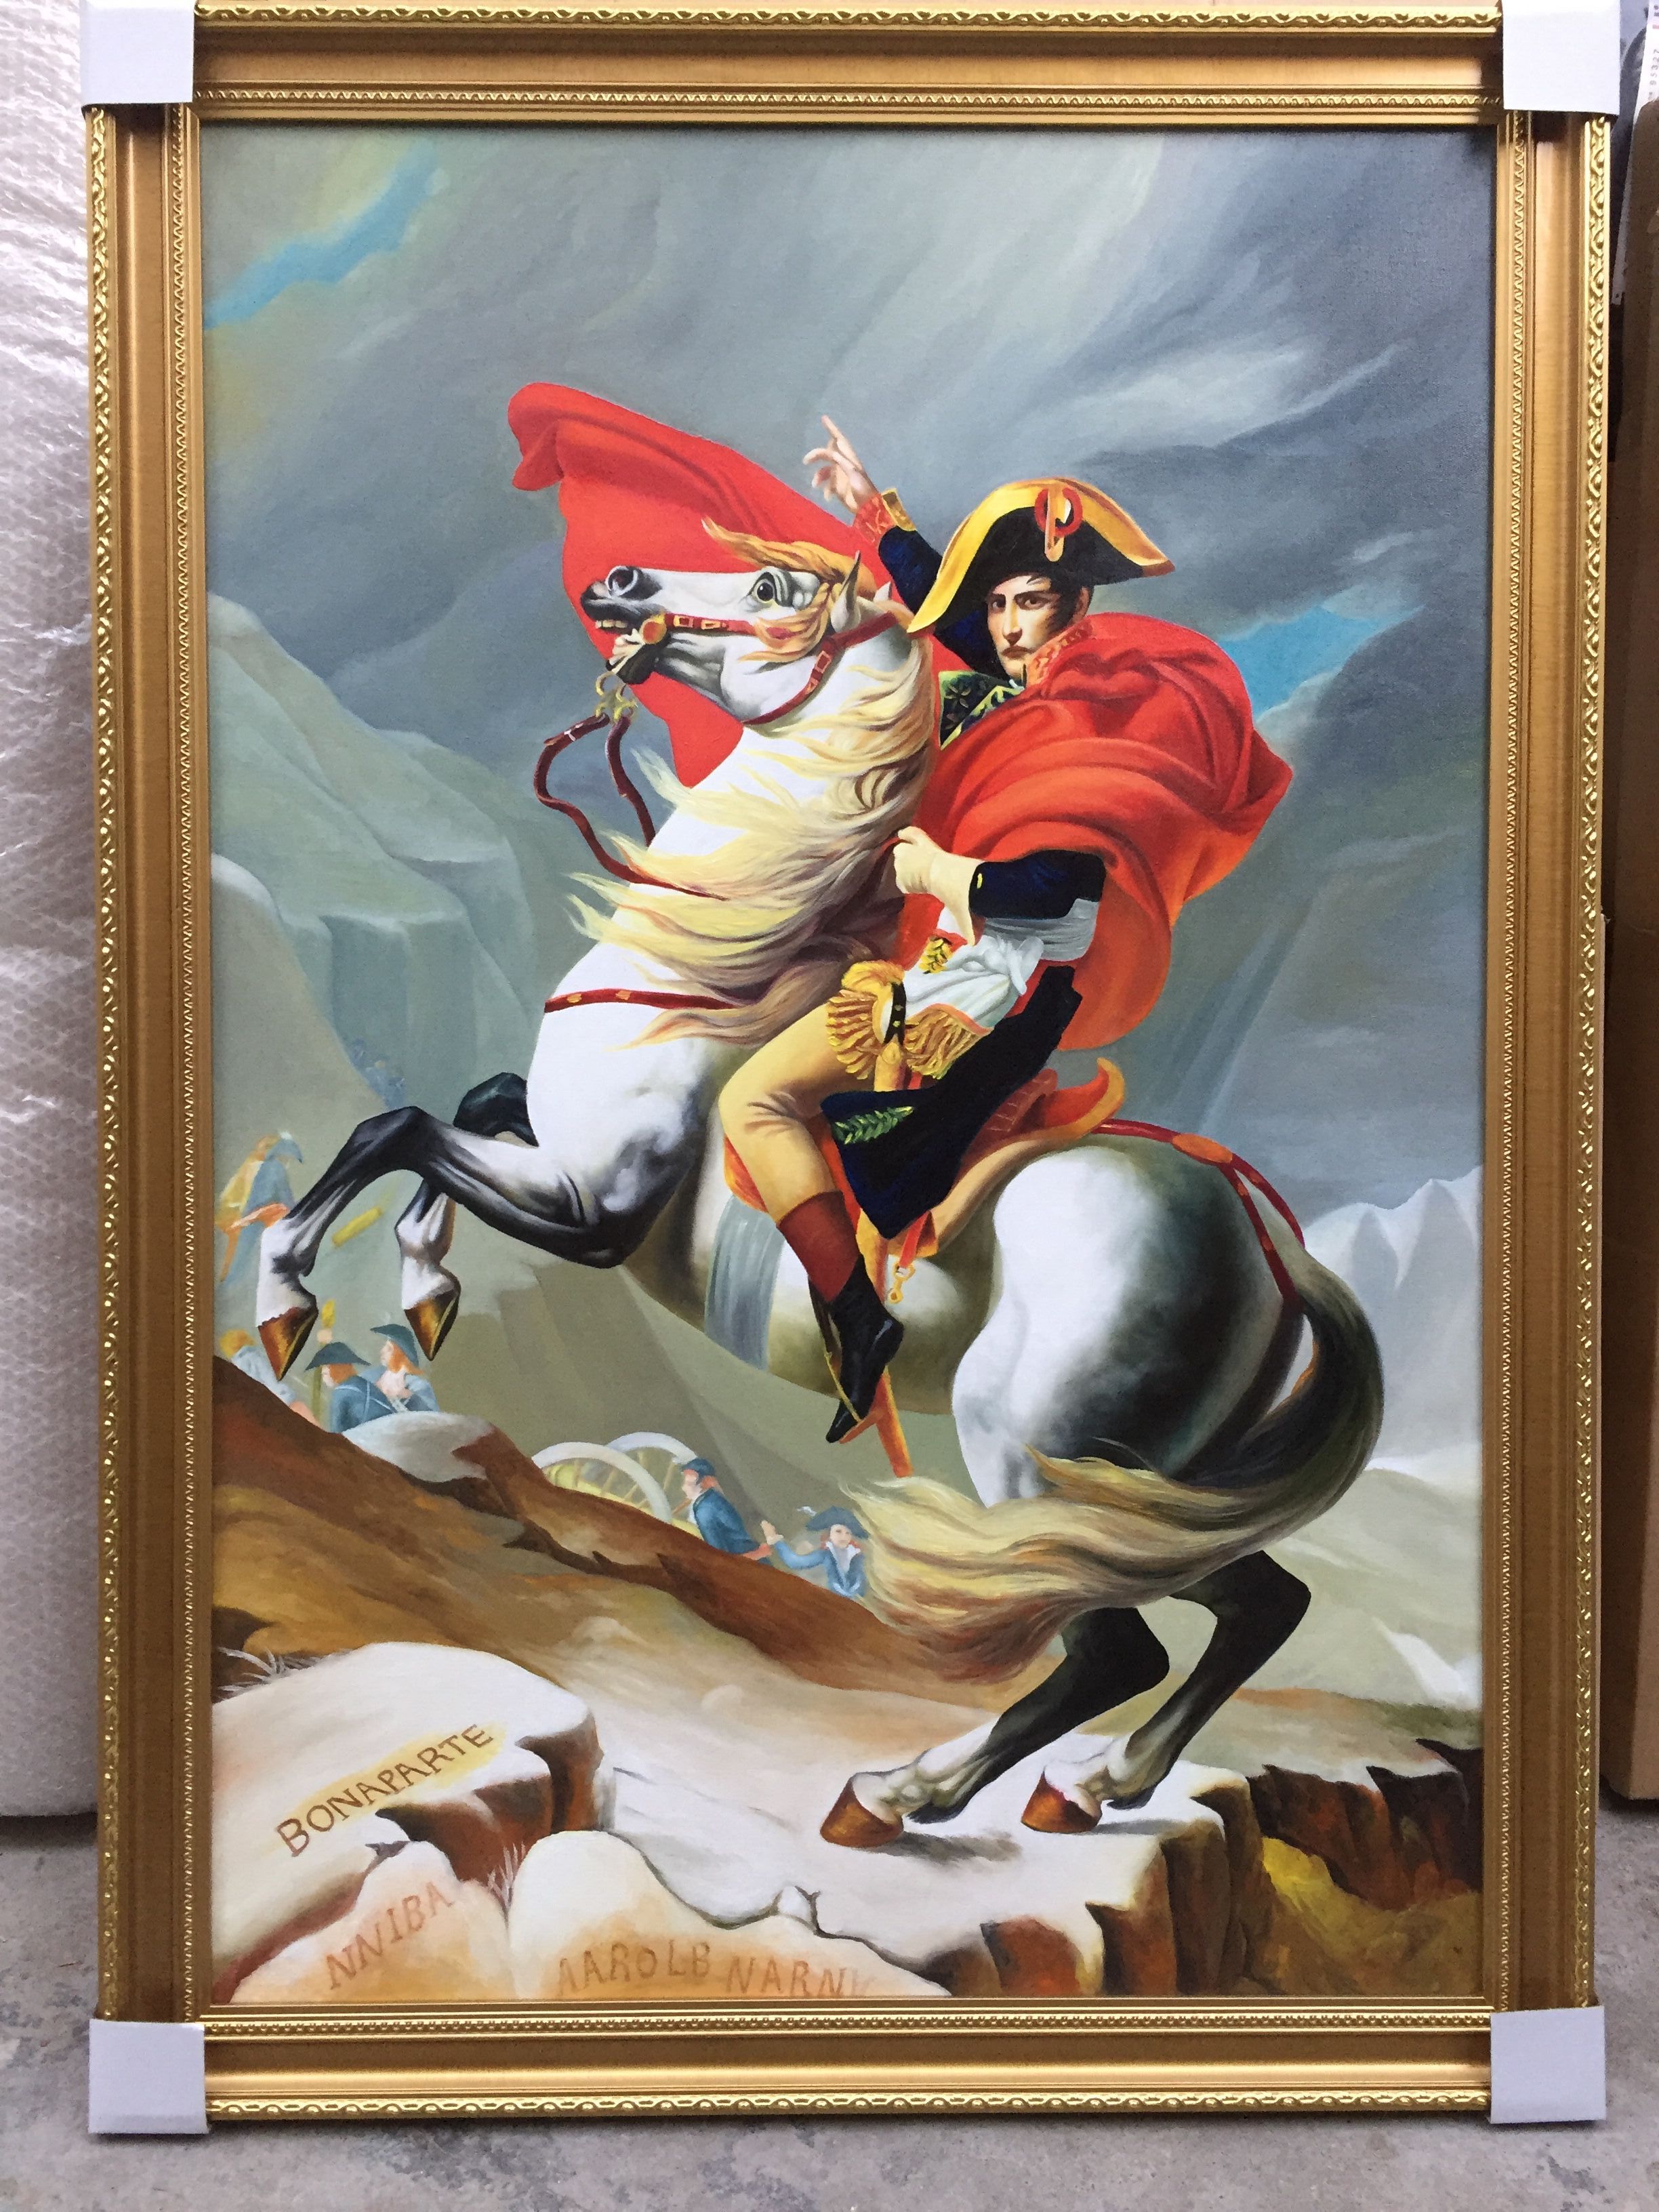 拿破仑骑马油画的意义图片